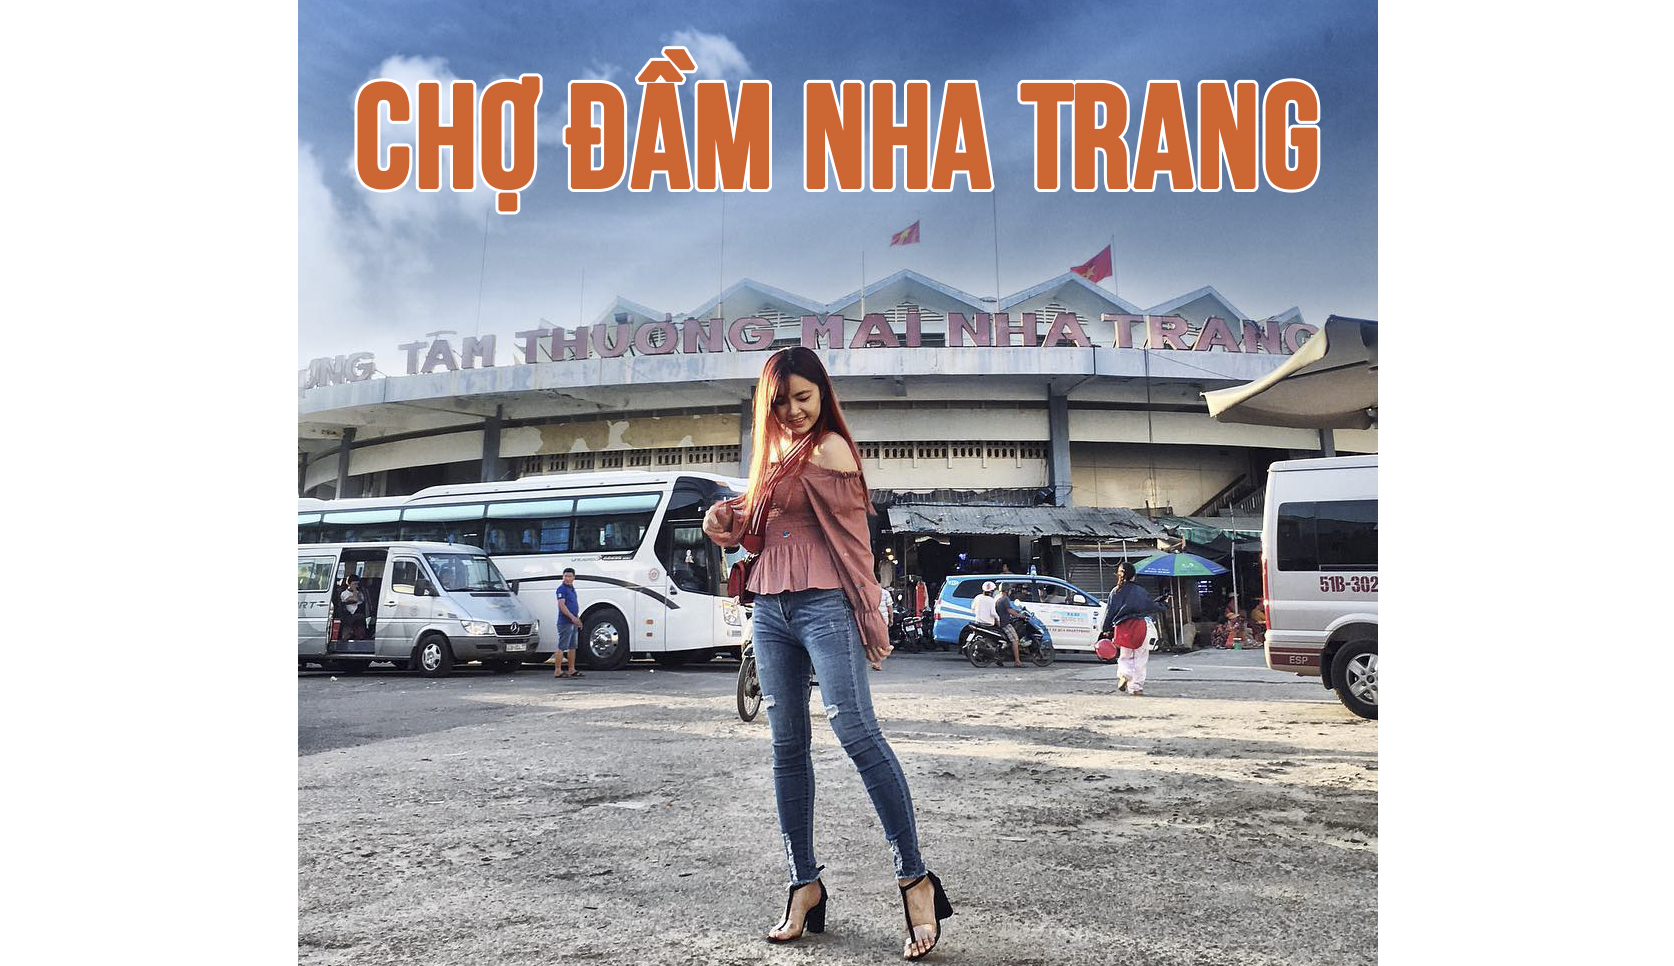 Kinh nghiệm mua sắm ở Chợ đầm Nha Trang